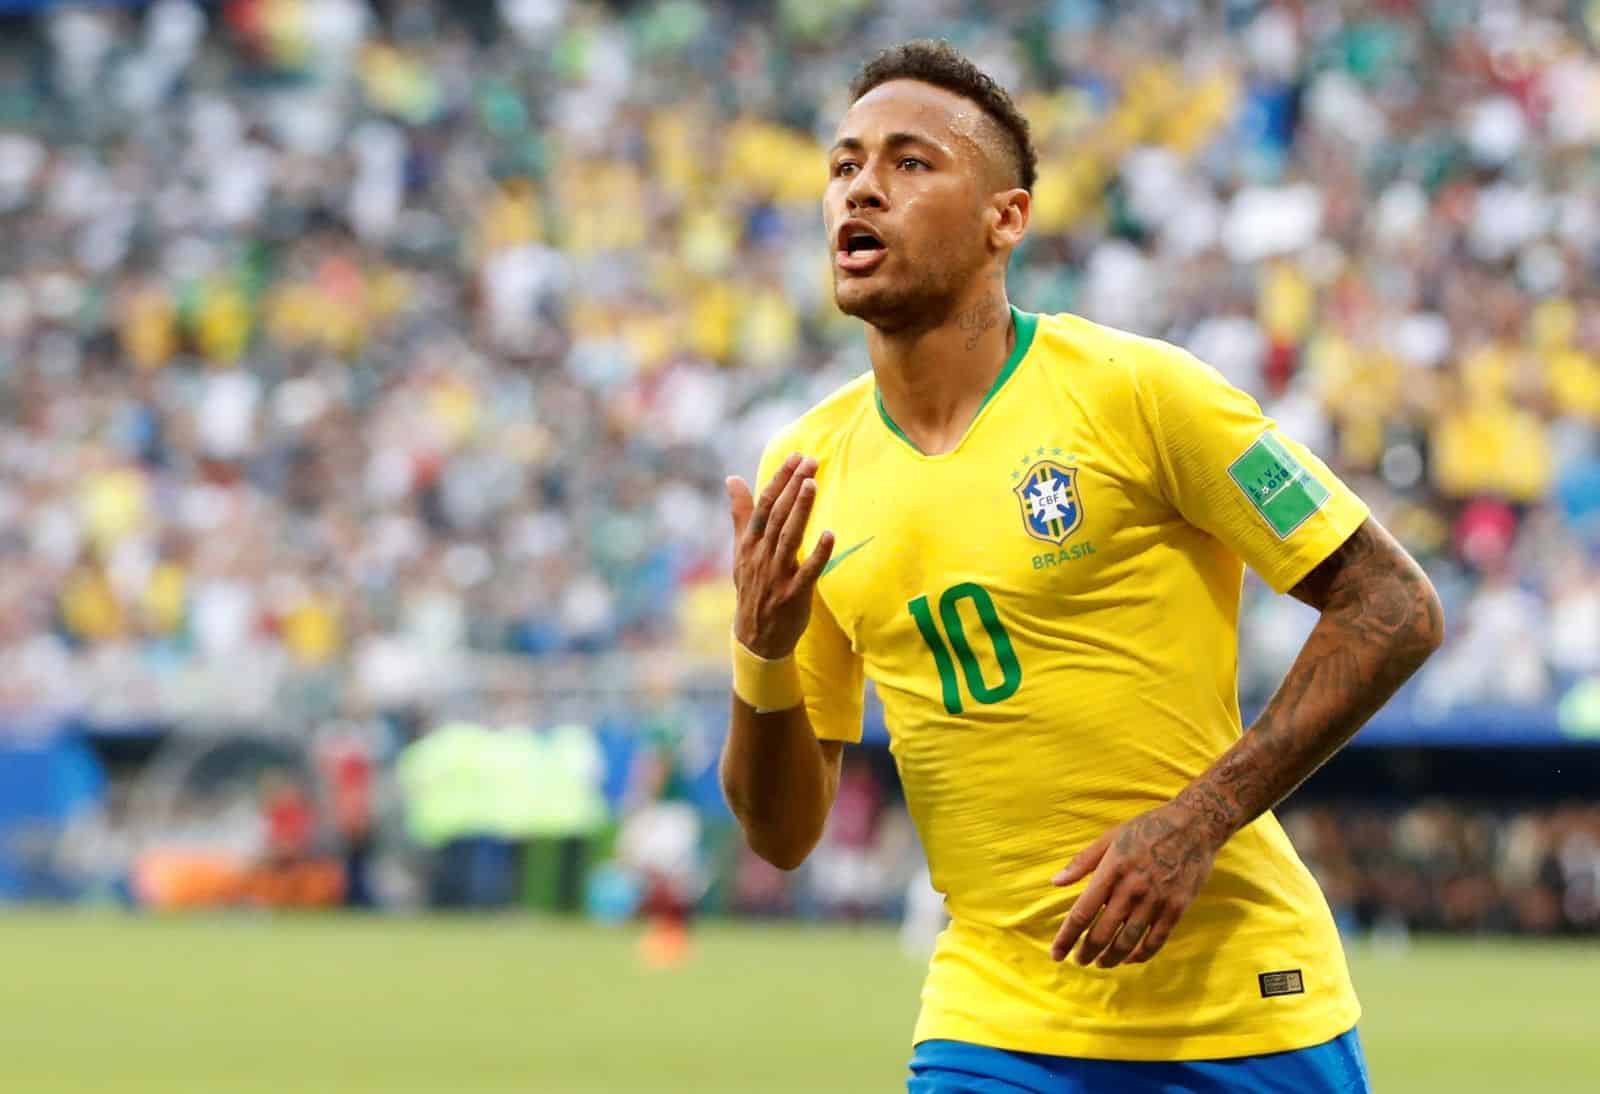 Nova tatuagem de Neymar causa polêmica e cria “teoria da conspiração”; veja